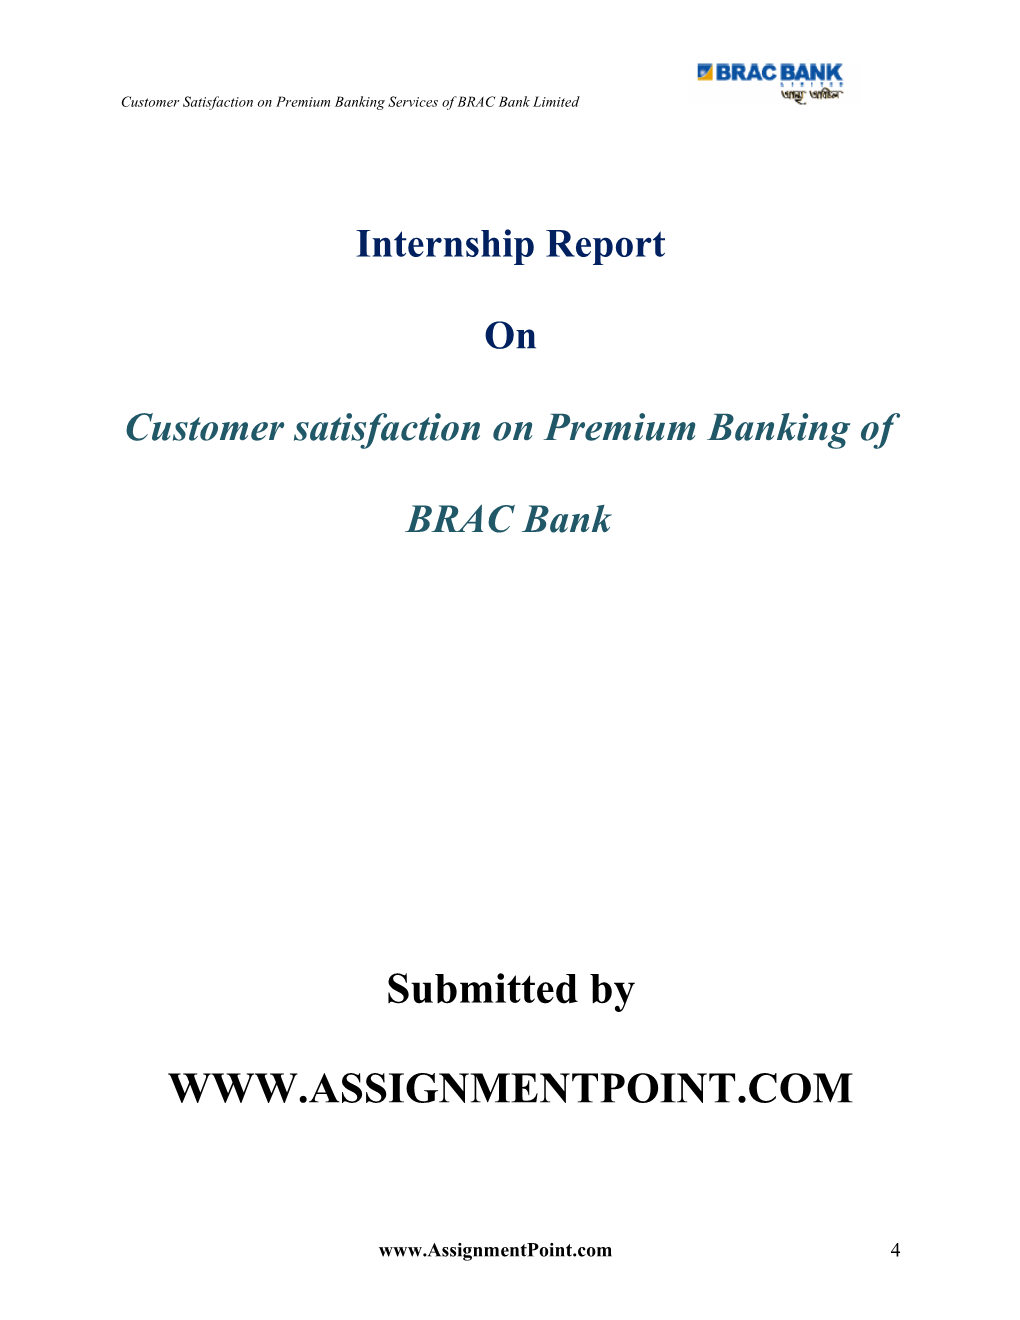 Customer Satisfaction on Premium Banking of BRAC Bank